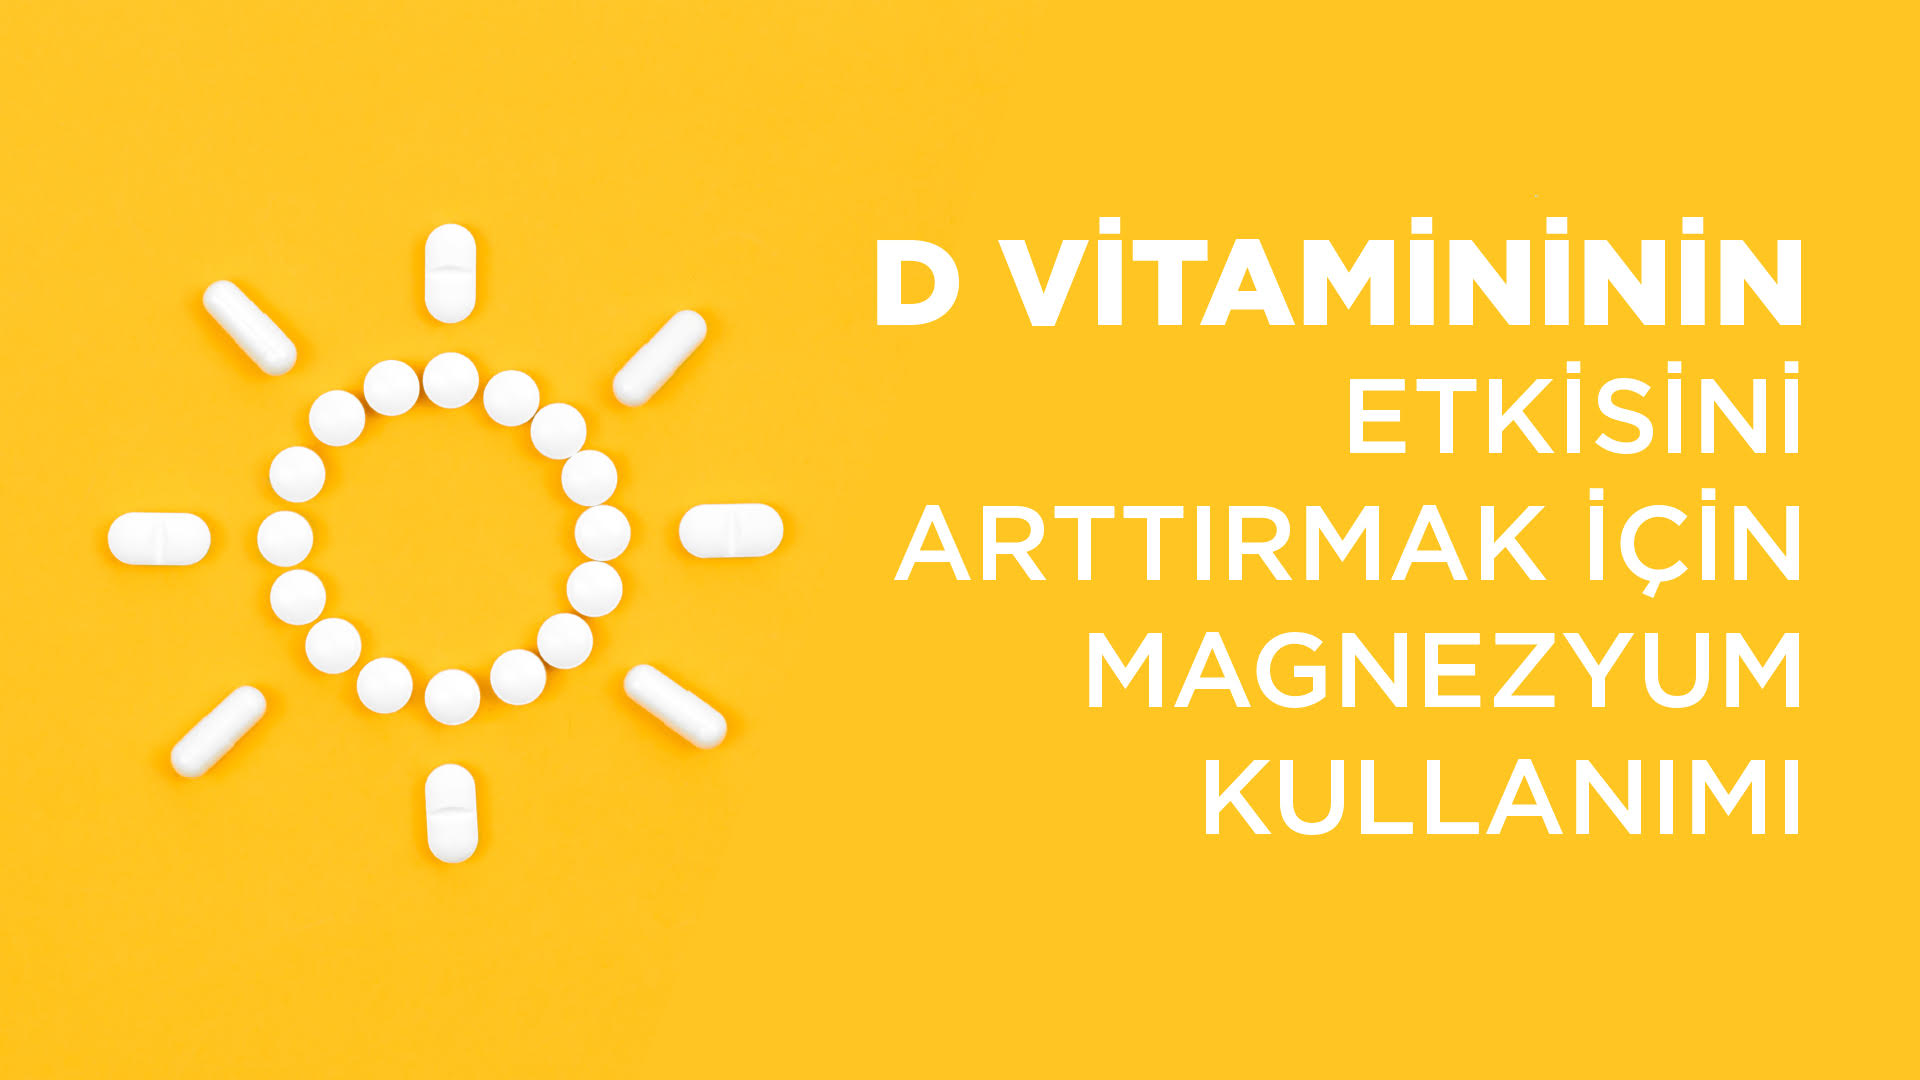 D Vitamininin Etkisini Arttırmak İçin Magnezum Kullanımı - Vitafenix